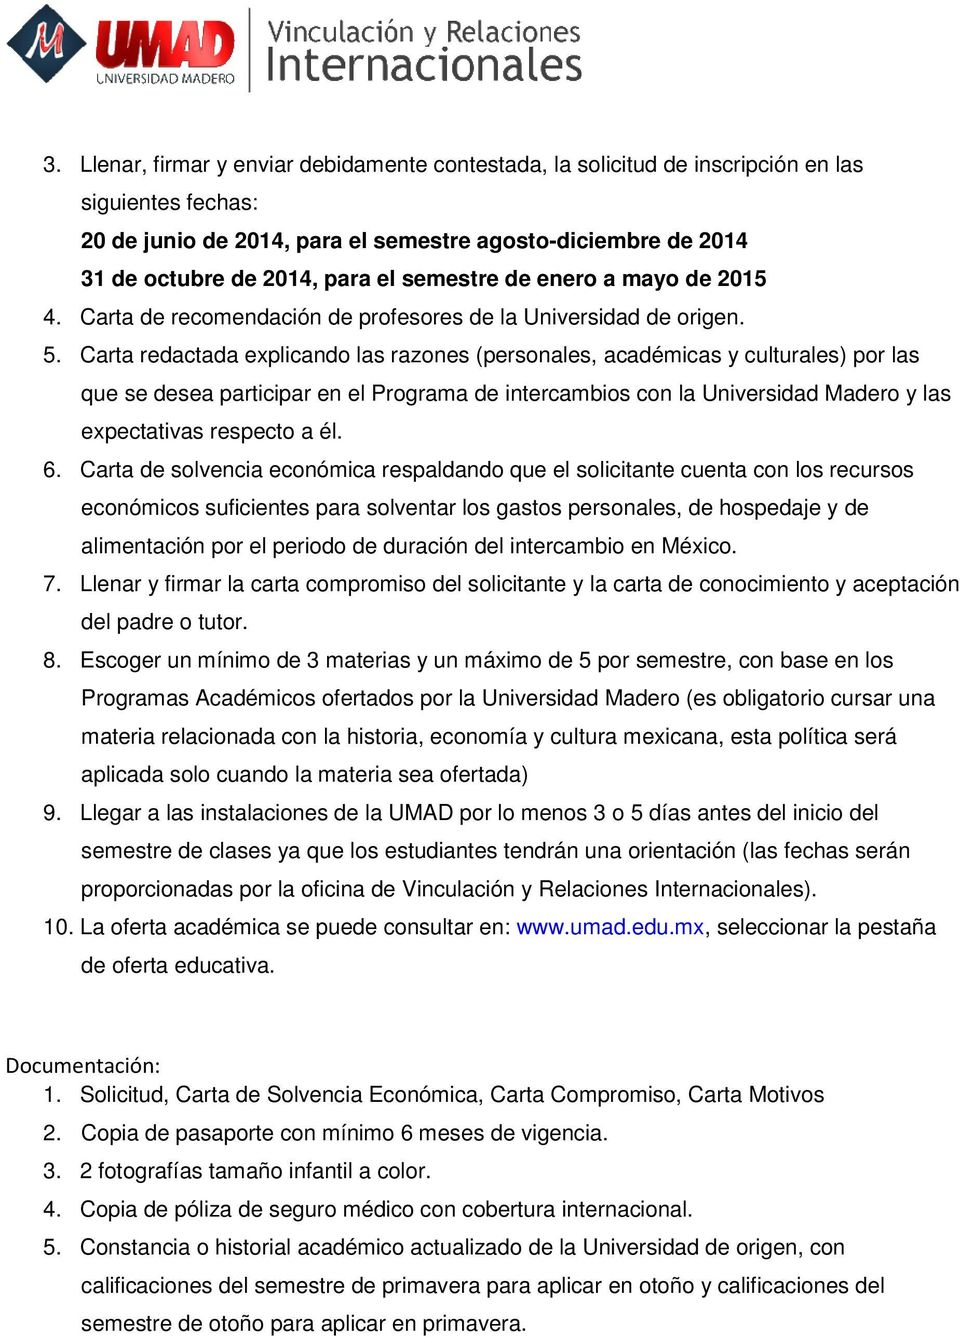 Carta redactada explicando las razones (personales, académicas y culturales) por las que se desea participar en el Programa de intercambios con la Universidad Madero y las expectativas respecto a él.